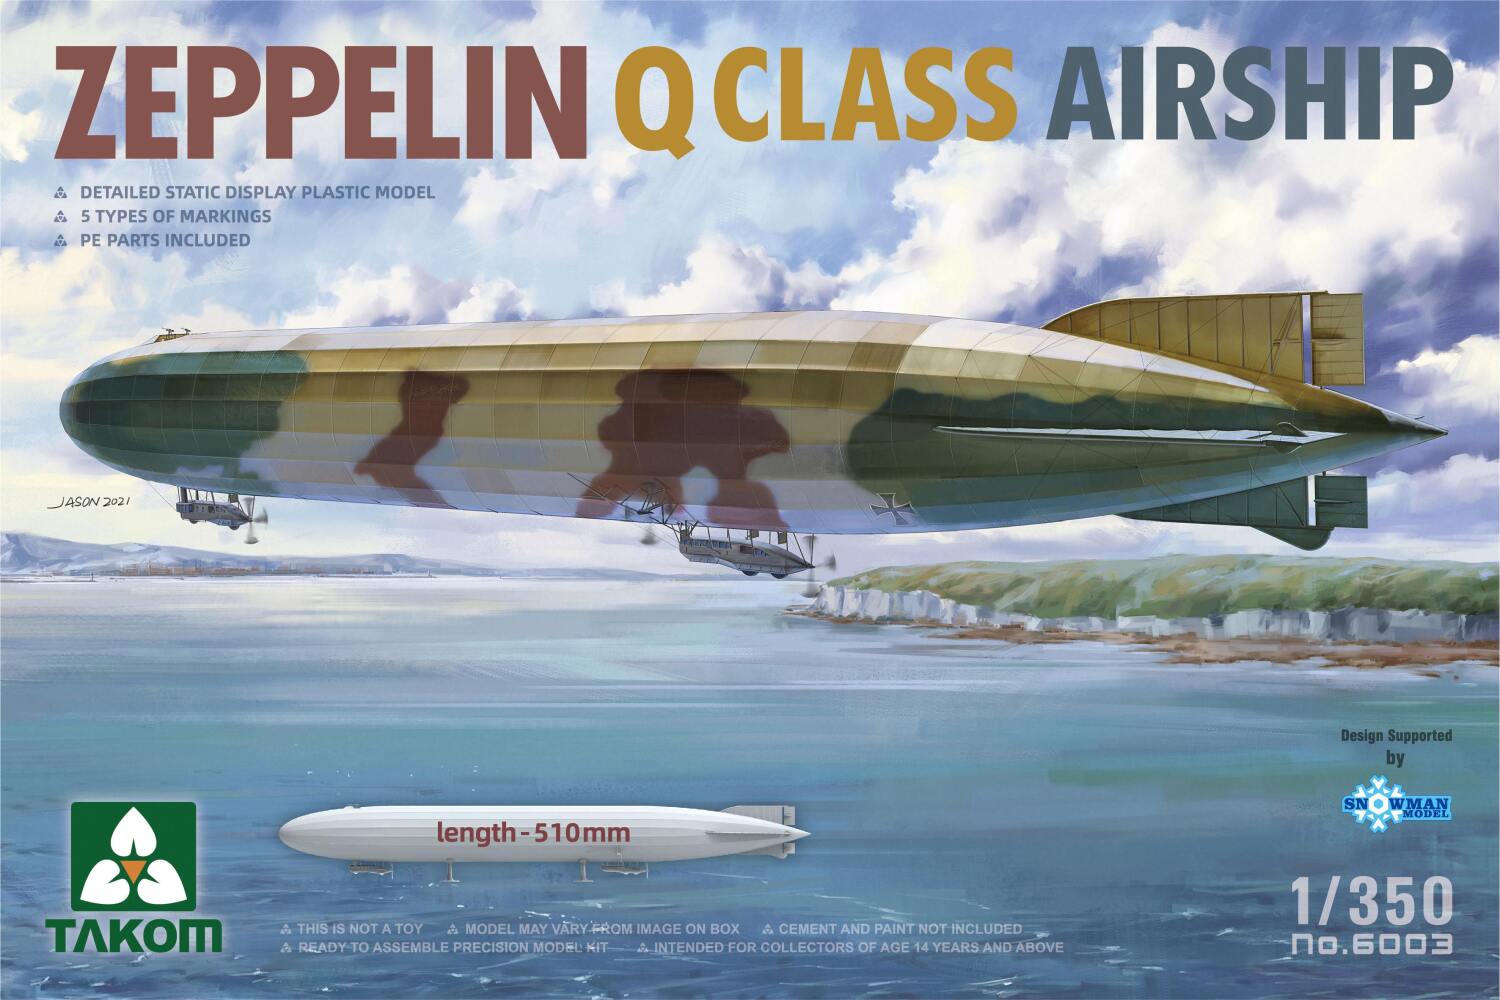 Zeppelin Q Class